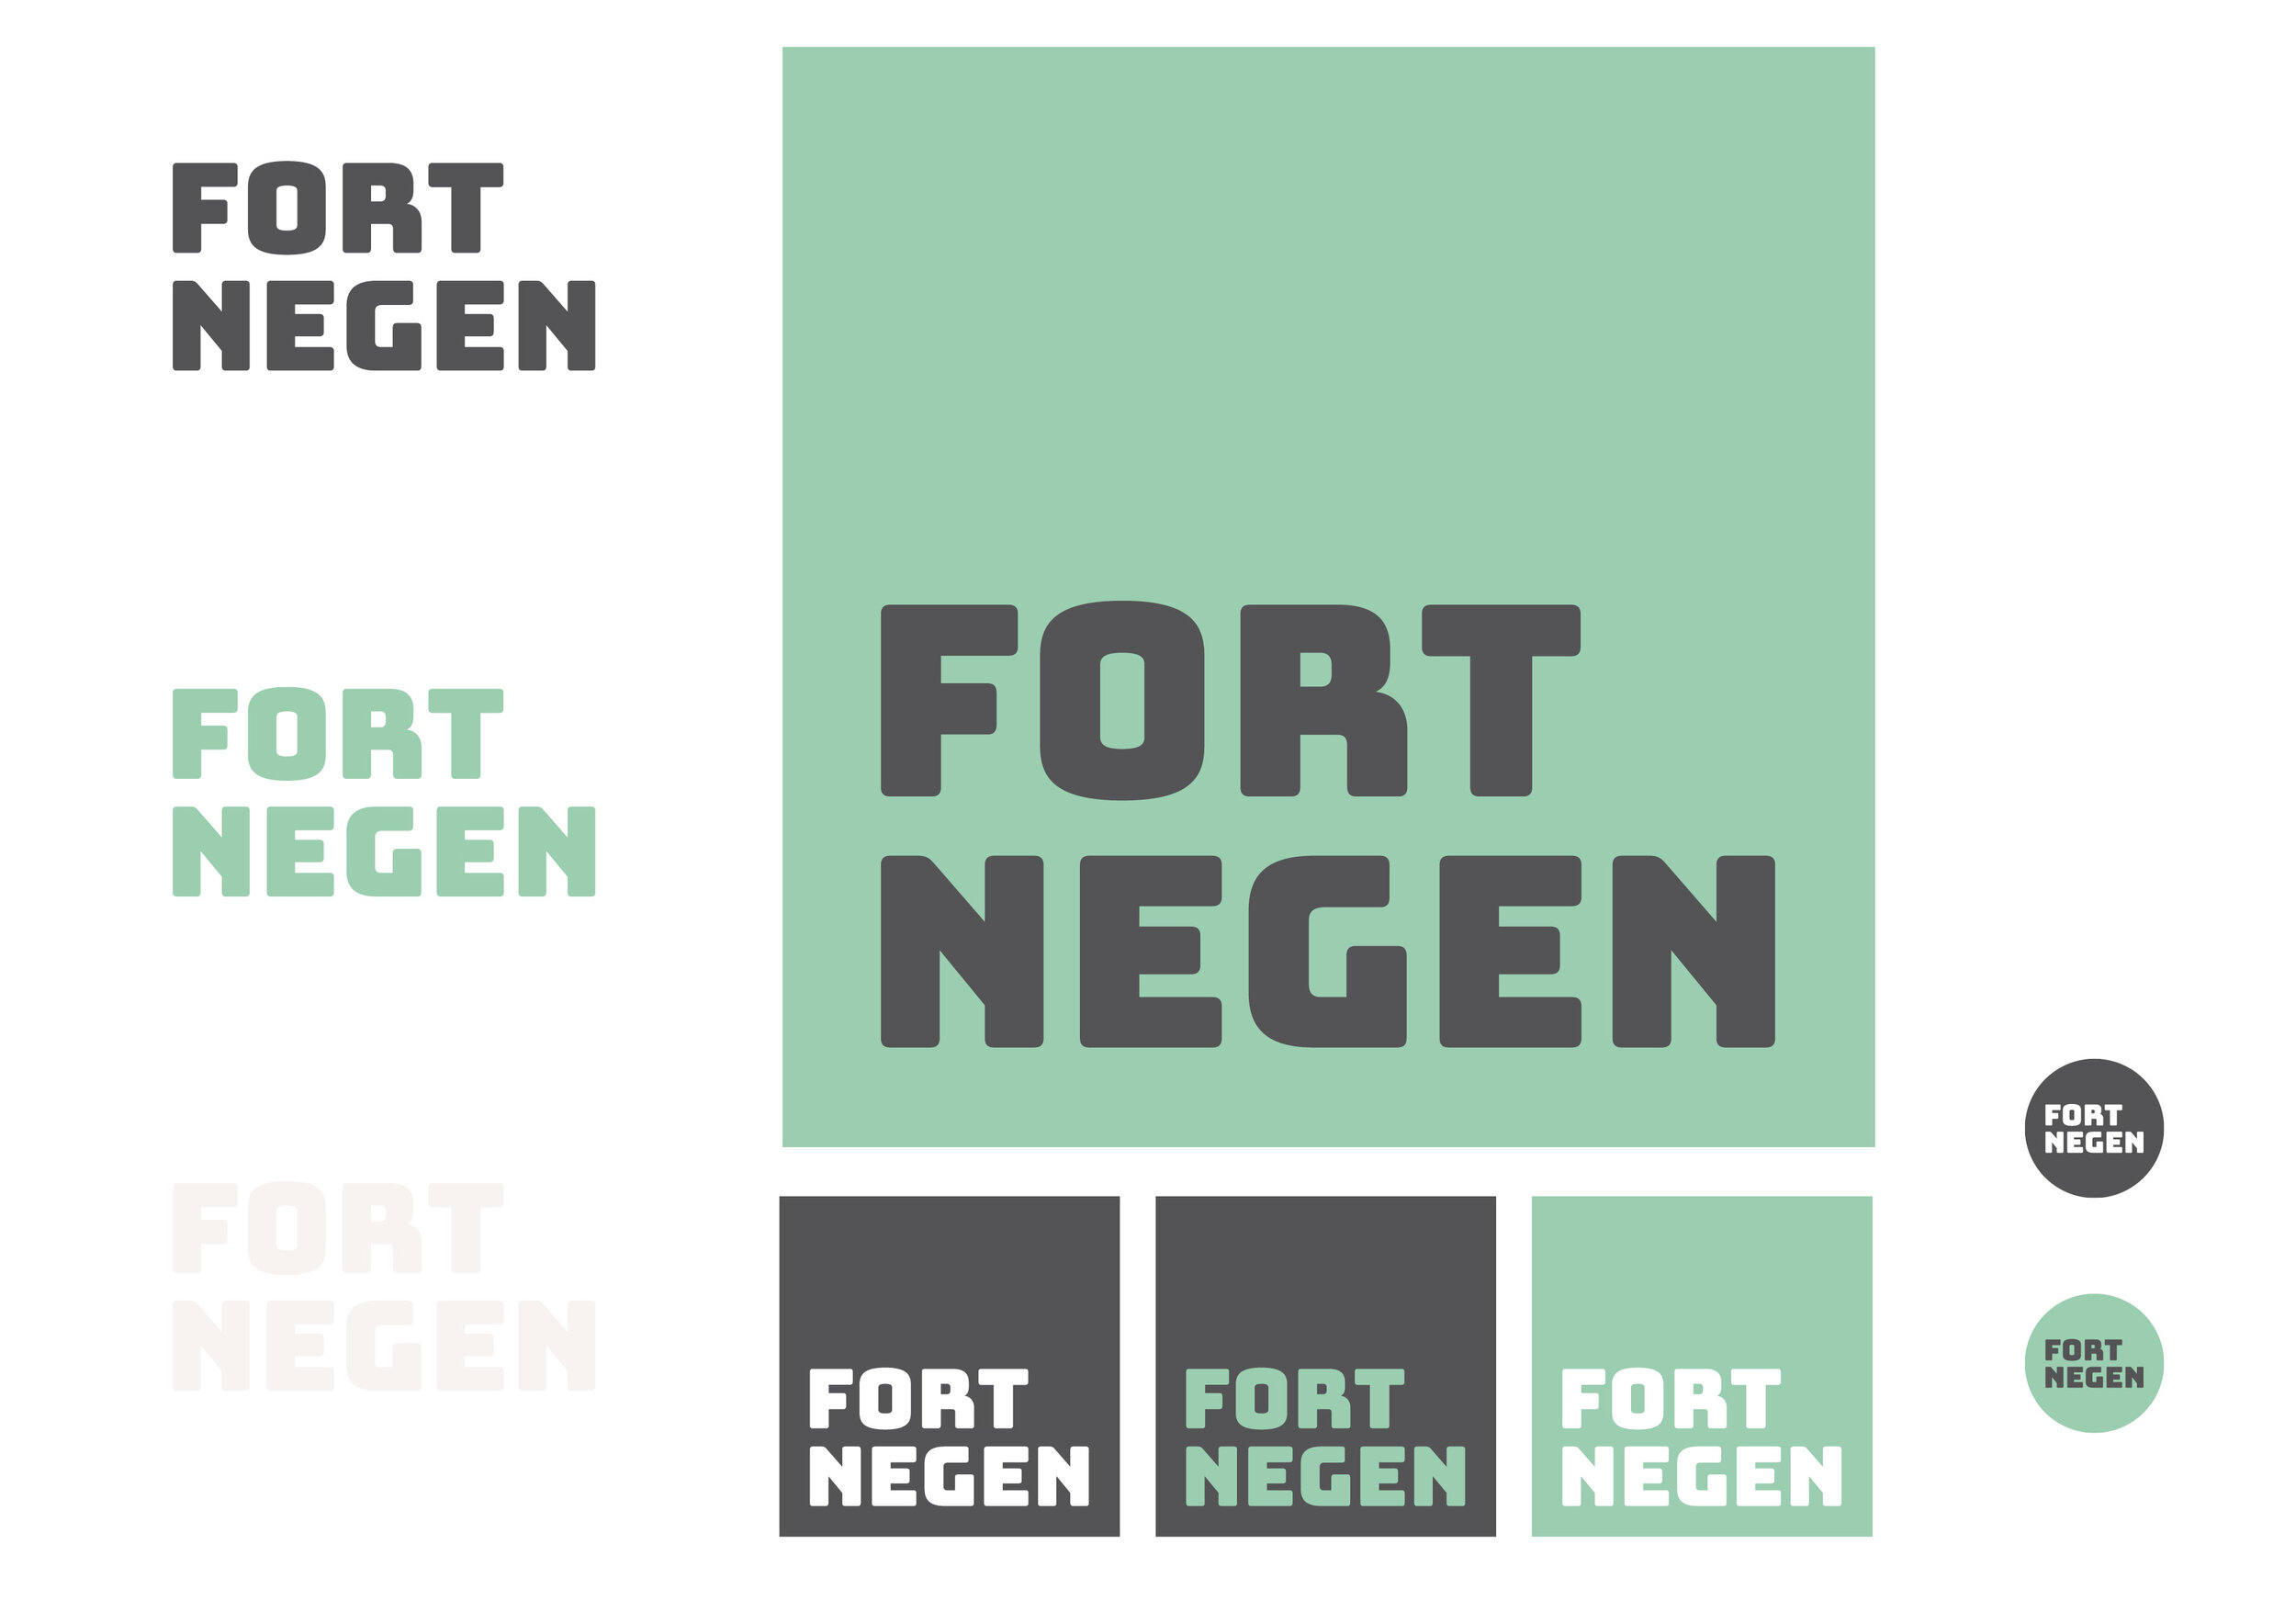 Fort Negen_Brand Identity_IVA2D3D_jpg.jpg